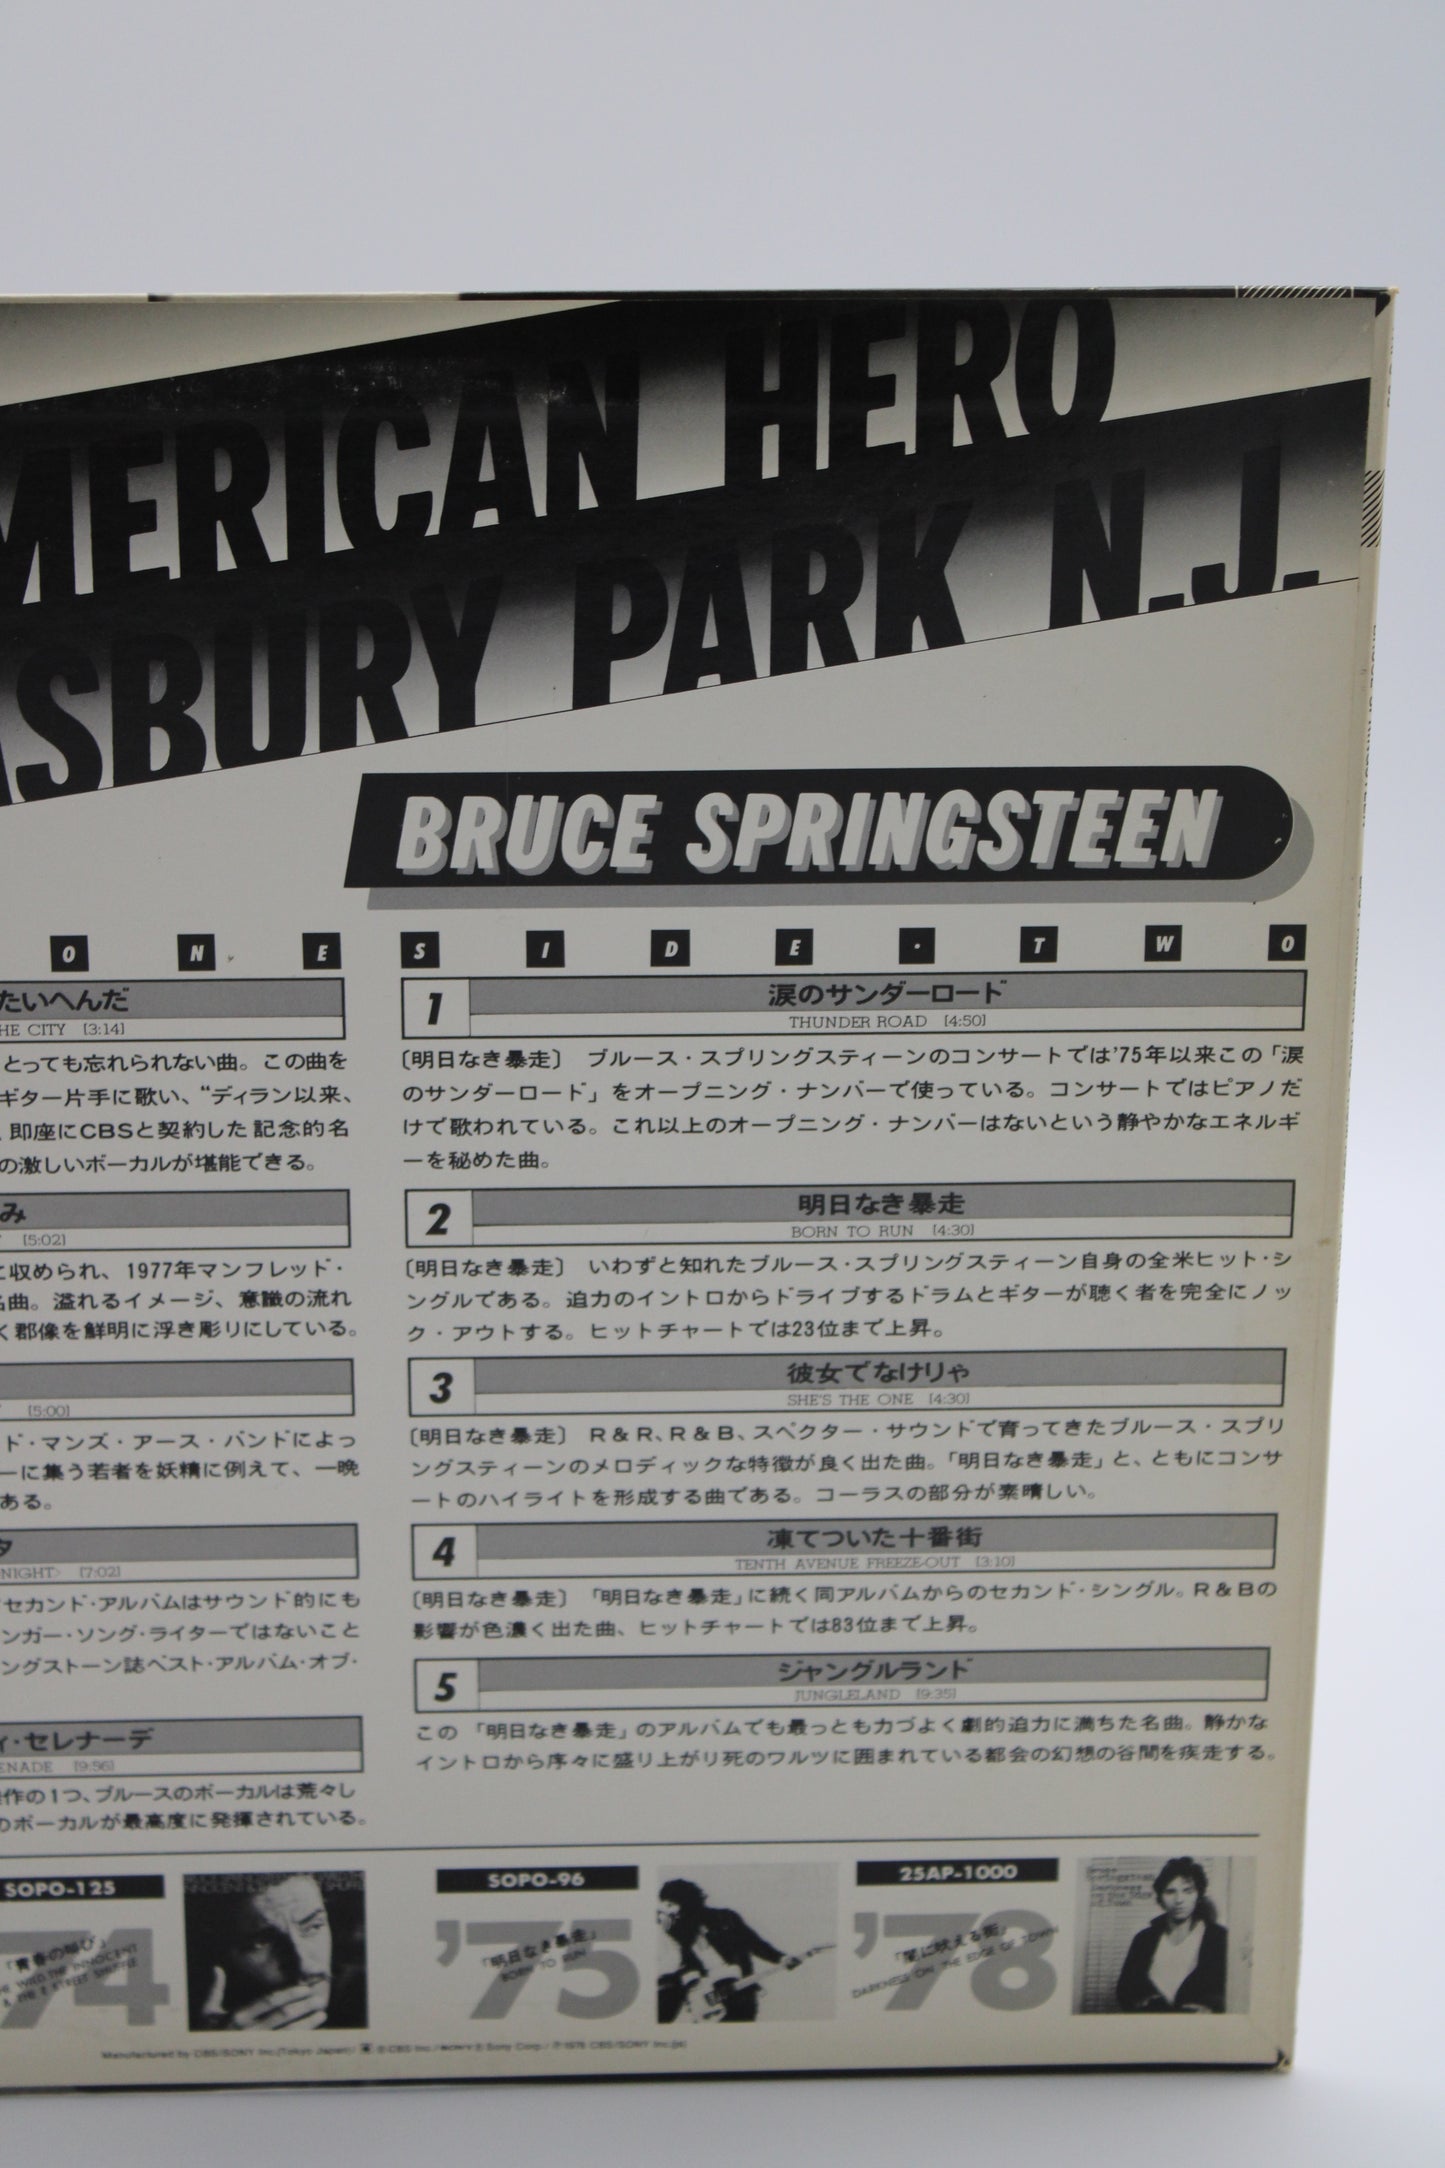 Bruce Springsteen - Last American Hero from Asbury Park N.J. – Japan Promo Vinyl